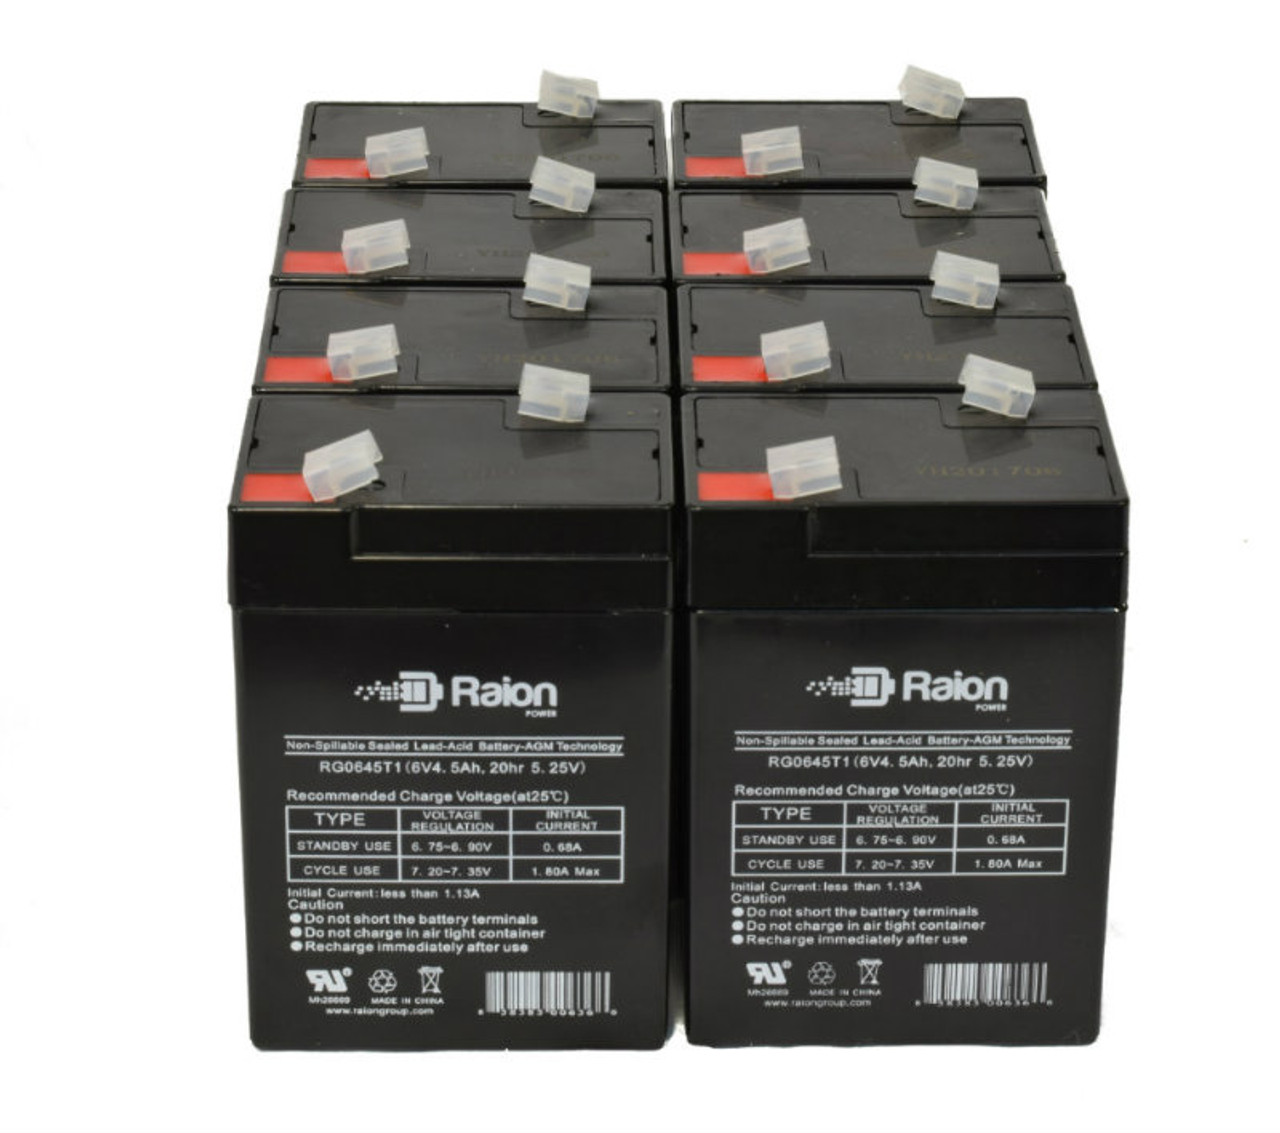 Raion Power 6 Volt 4.5Ah RG0645T1 Replacement Battery for Zibak ZP4.5-6 - 8 Pack